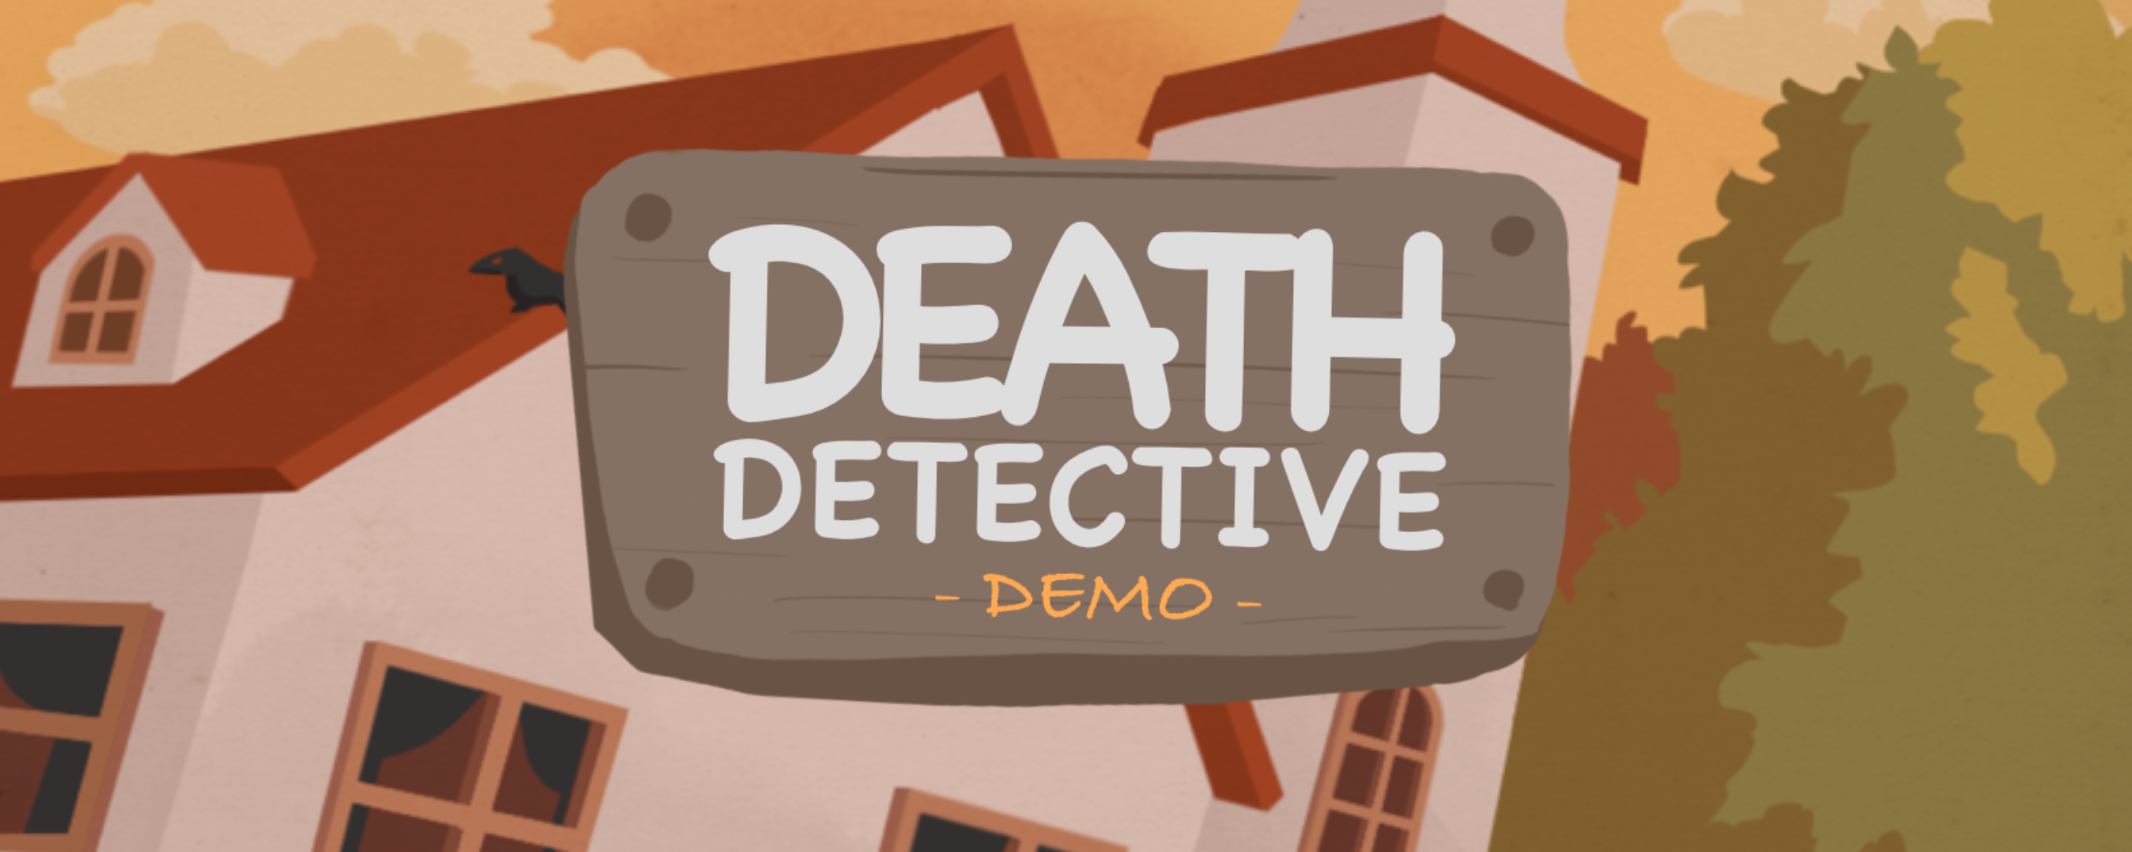 Death Detective - Demo